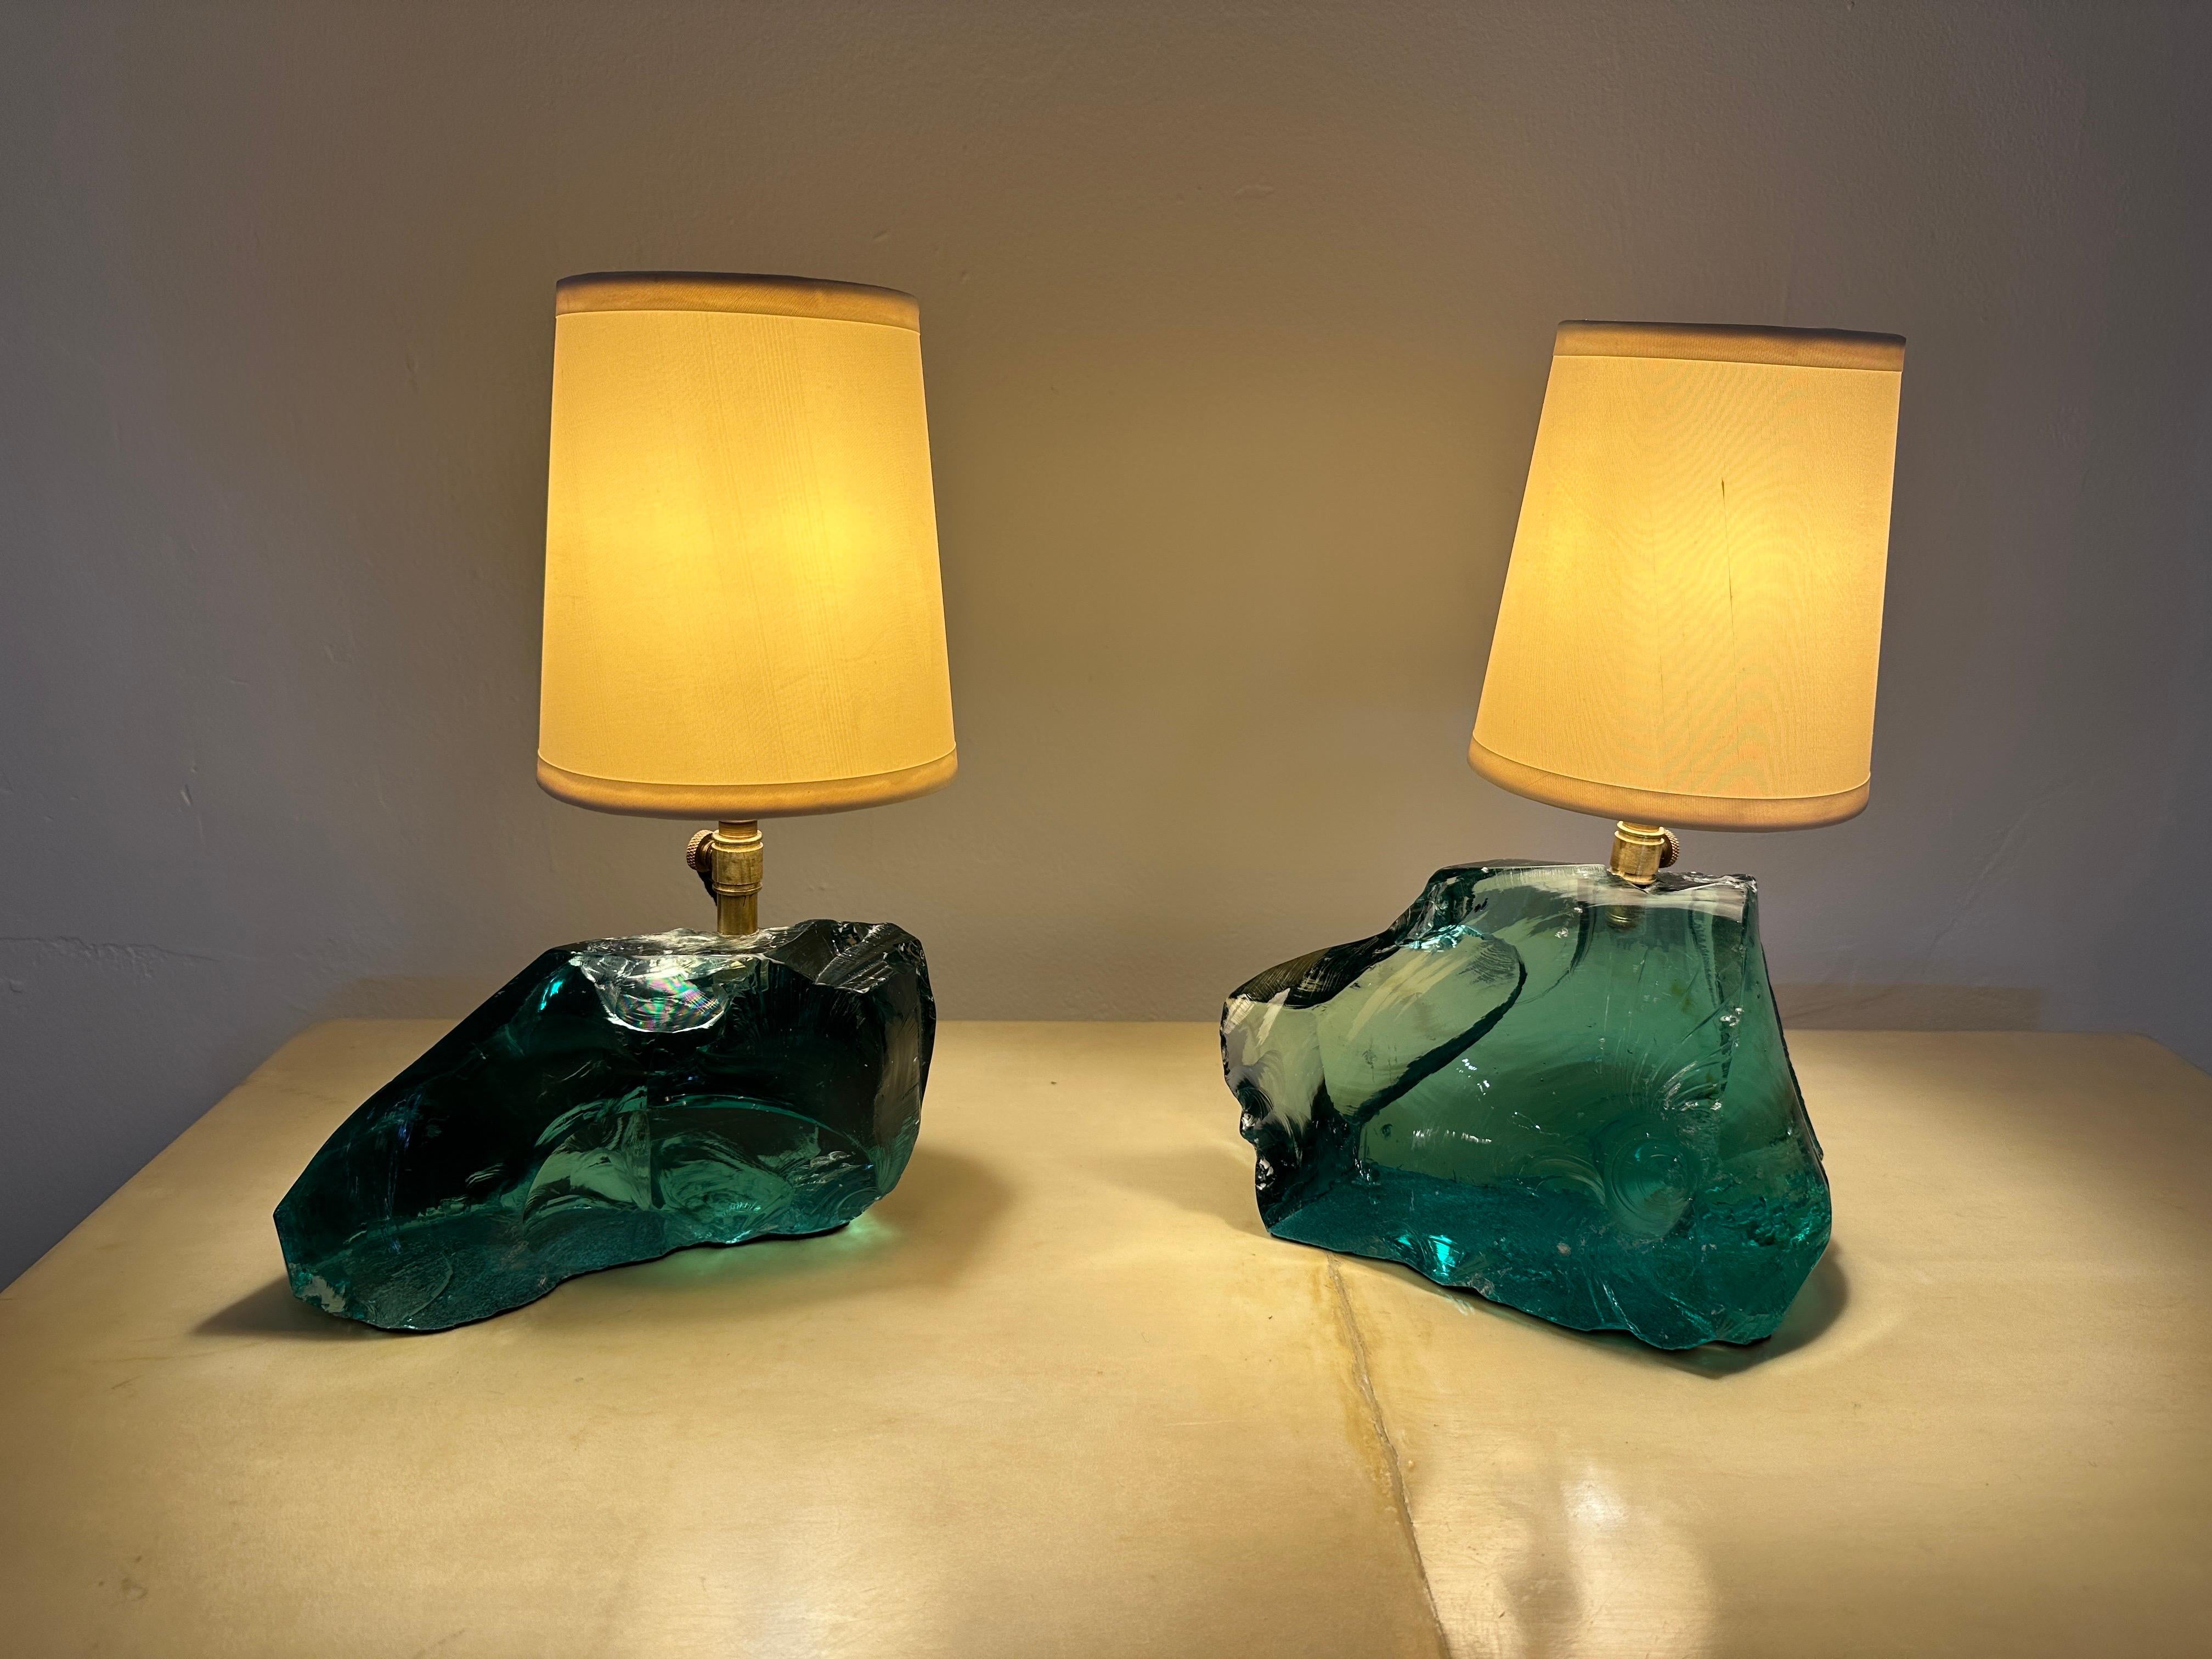 Ganz nach dem Geschmack von JMF hat Gustavo Olivieri diese Lampen mit aquagrünen Schlackenglasbrocken und Vintage-Schirmen entworfen.  DIESER ARTIKEL BEFINDET SICH IN UNSEREM AUSSTELLUNGSRAUM IN MIAMI, FLORIDA, UND WIRD VON DORT AUS VERSANDT.